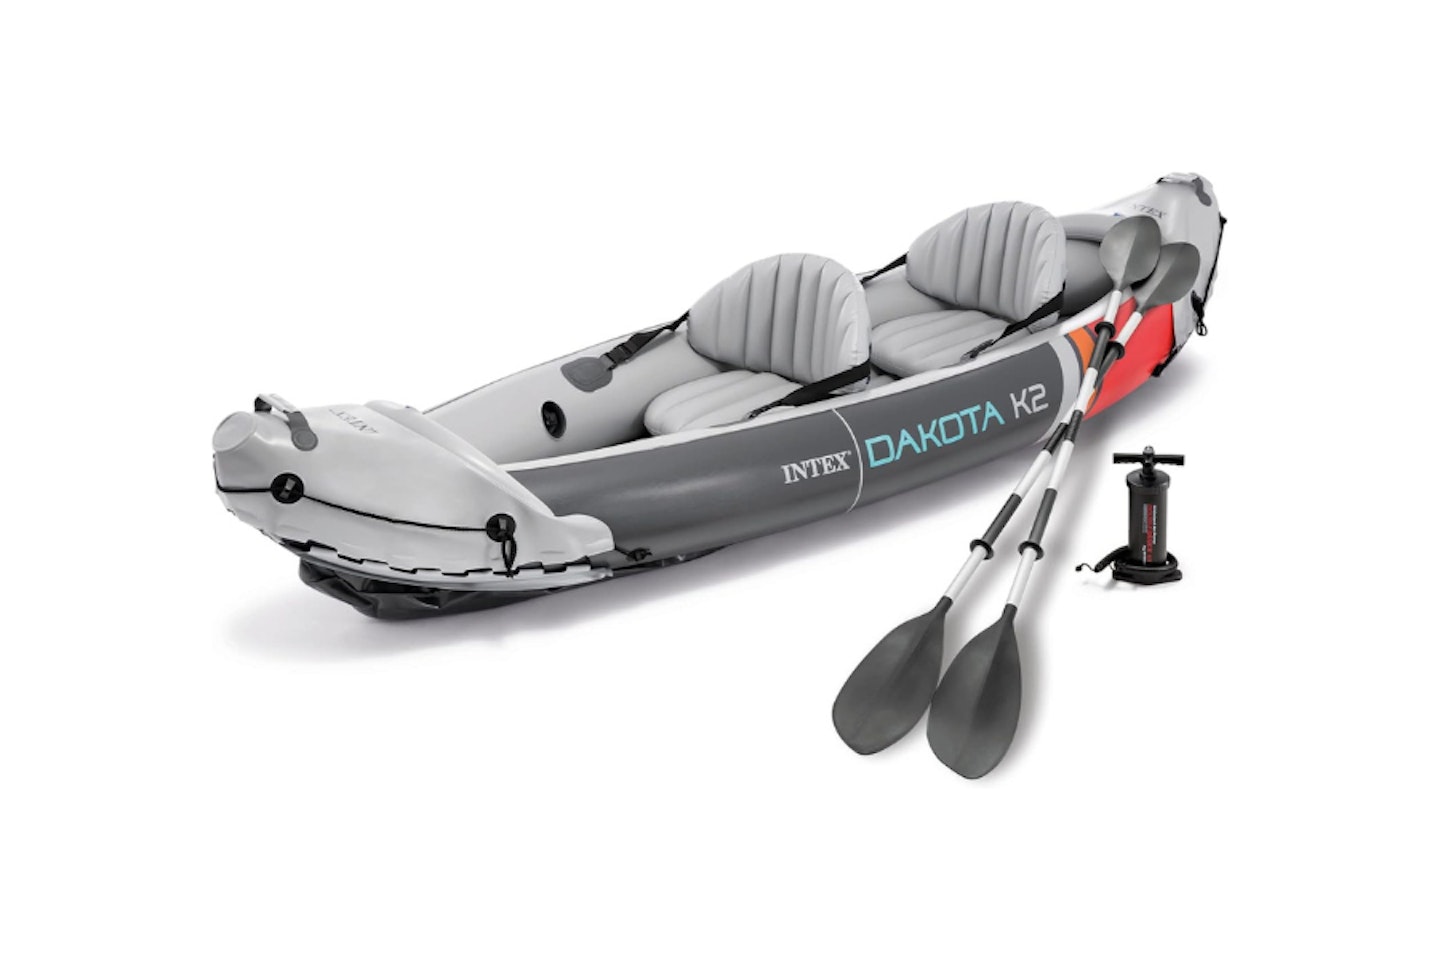 Intex Dakota K2 2-Person Heavy-Duty Vinyl Inflatable Kayak